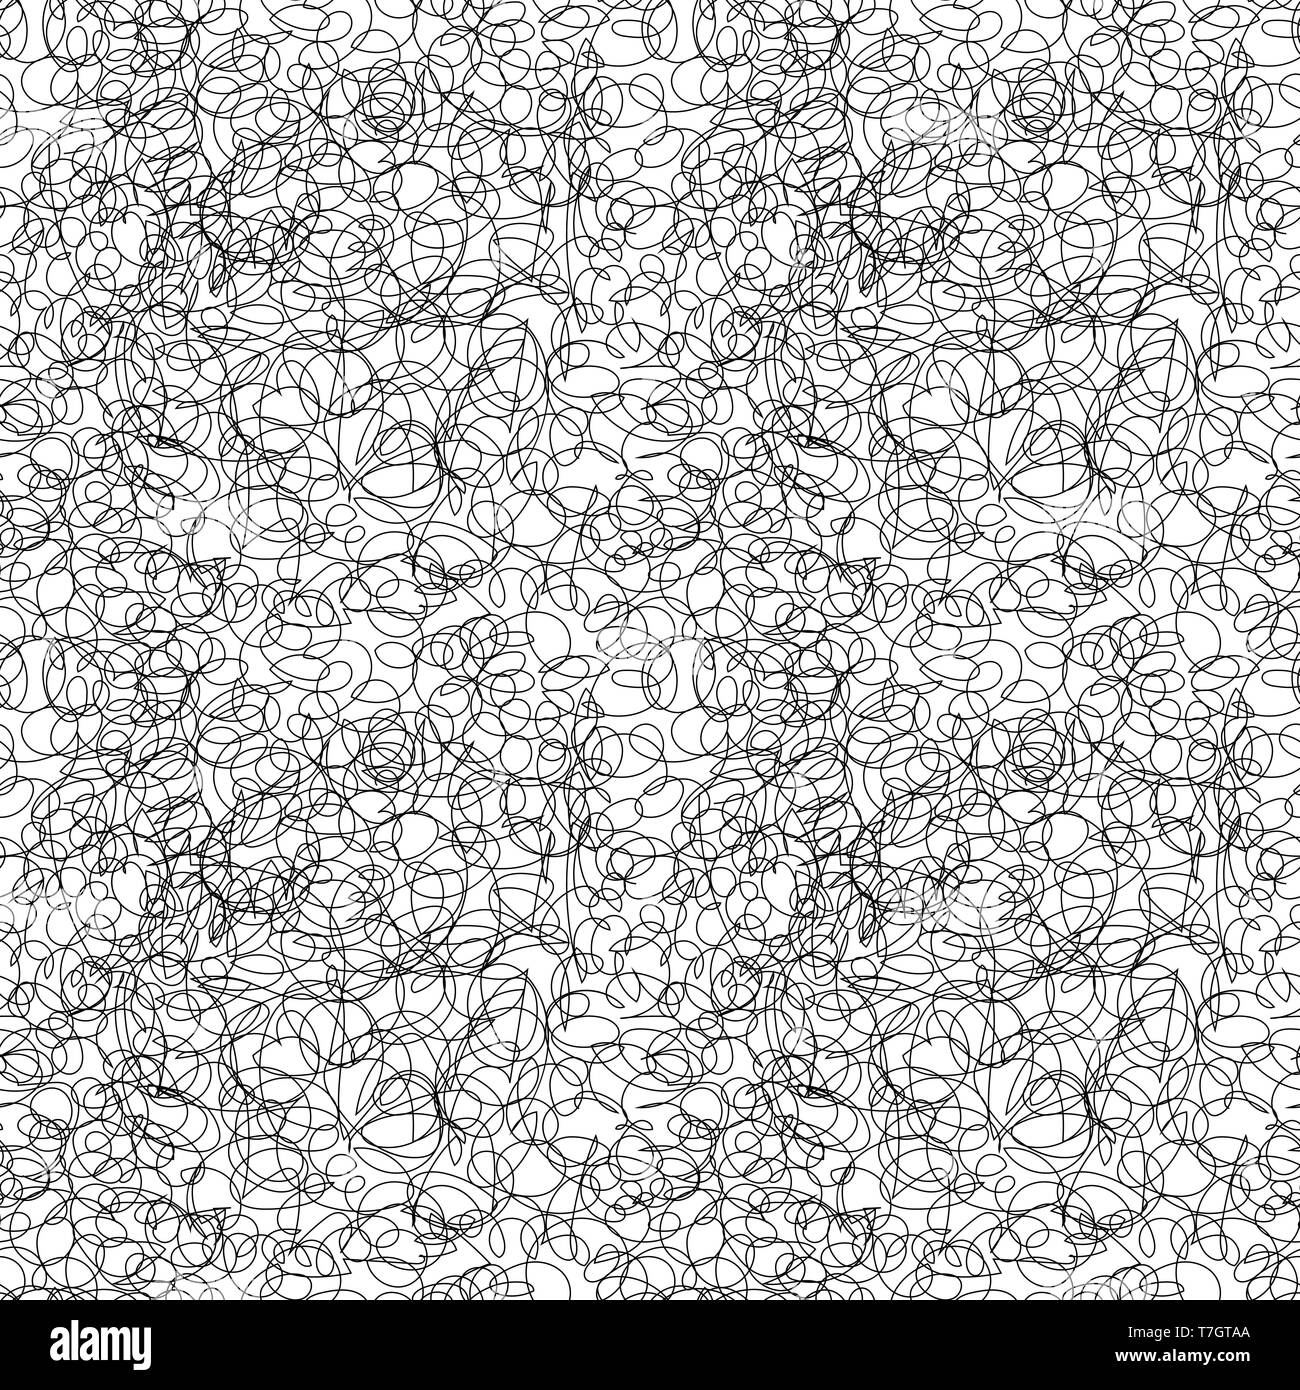 Abstract di nero da cova disordinato, Freehand progettazione seamless pattern su bianco Illustrazione Vettoriale